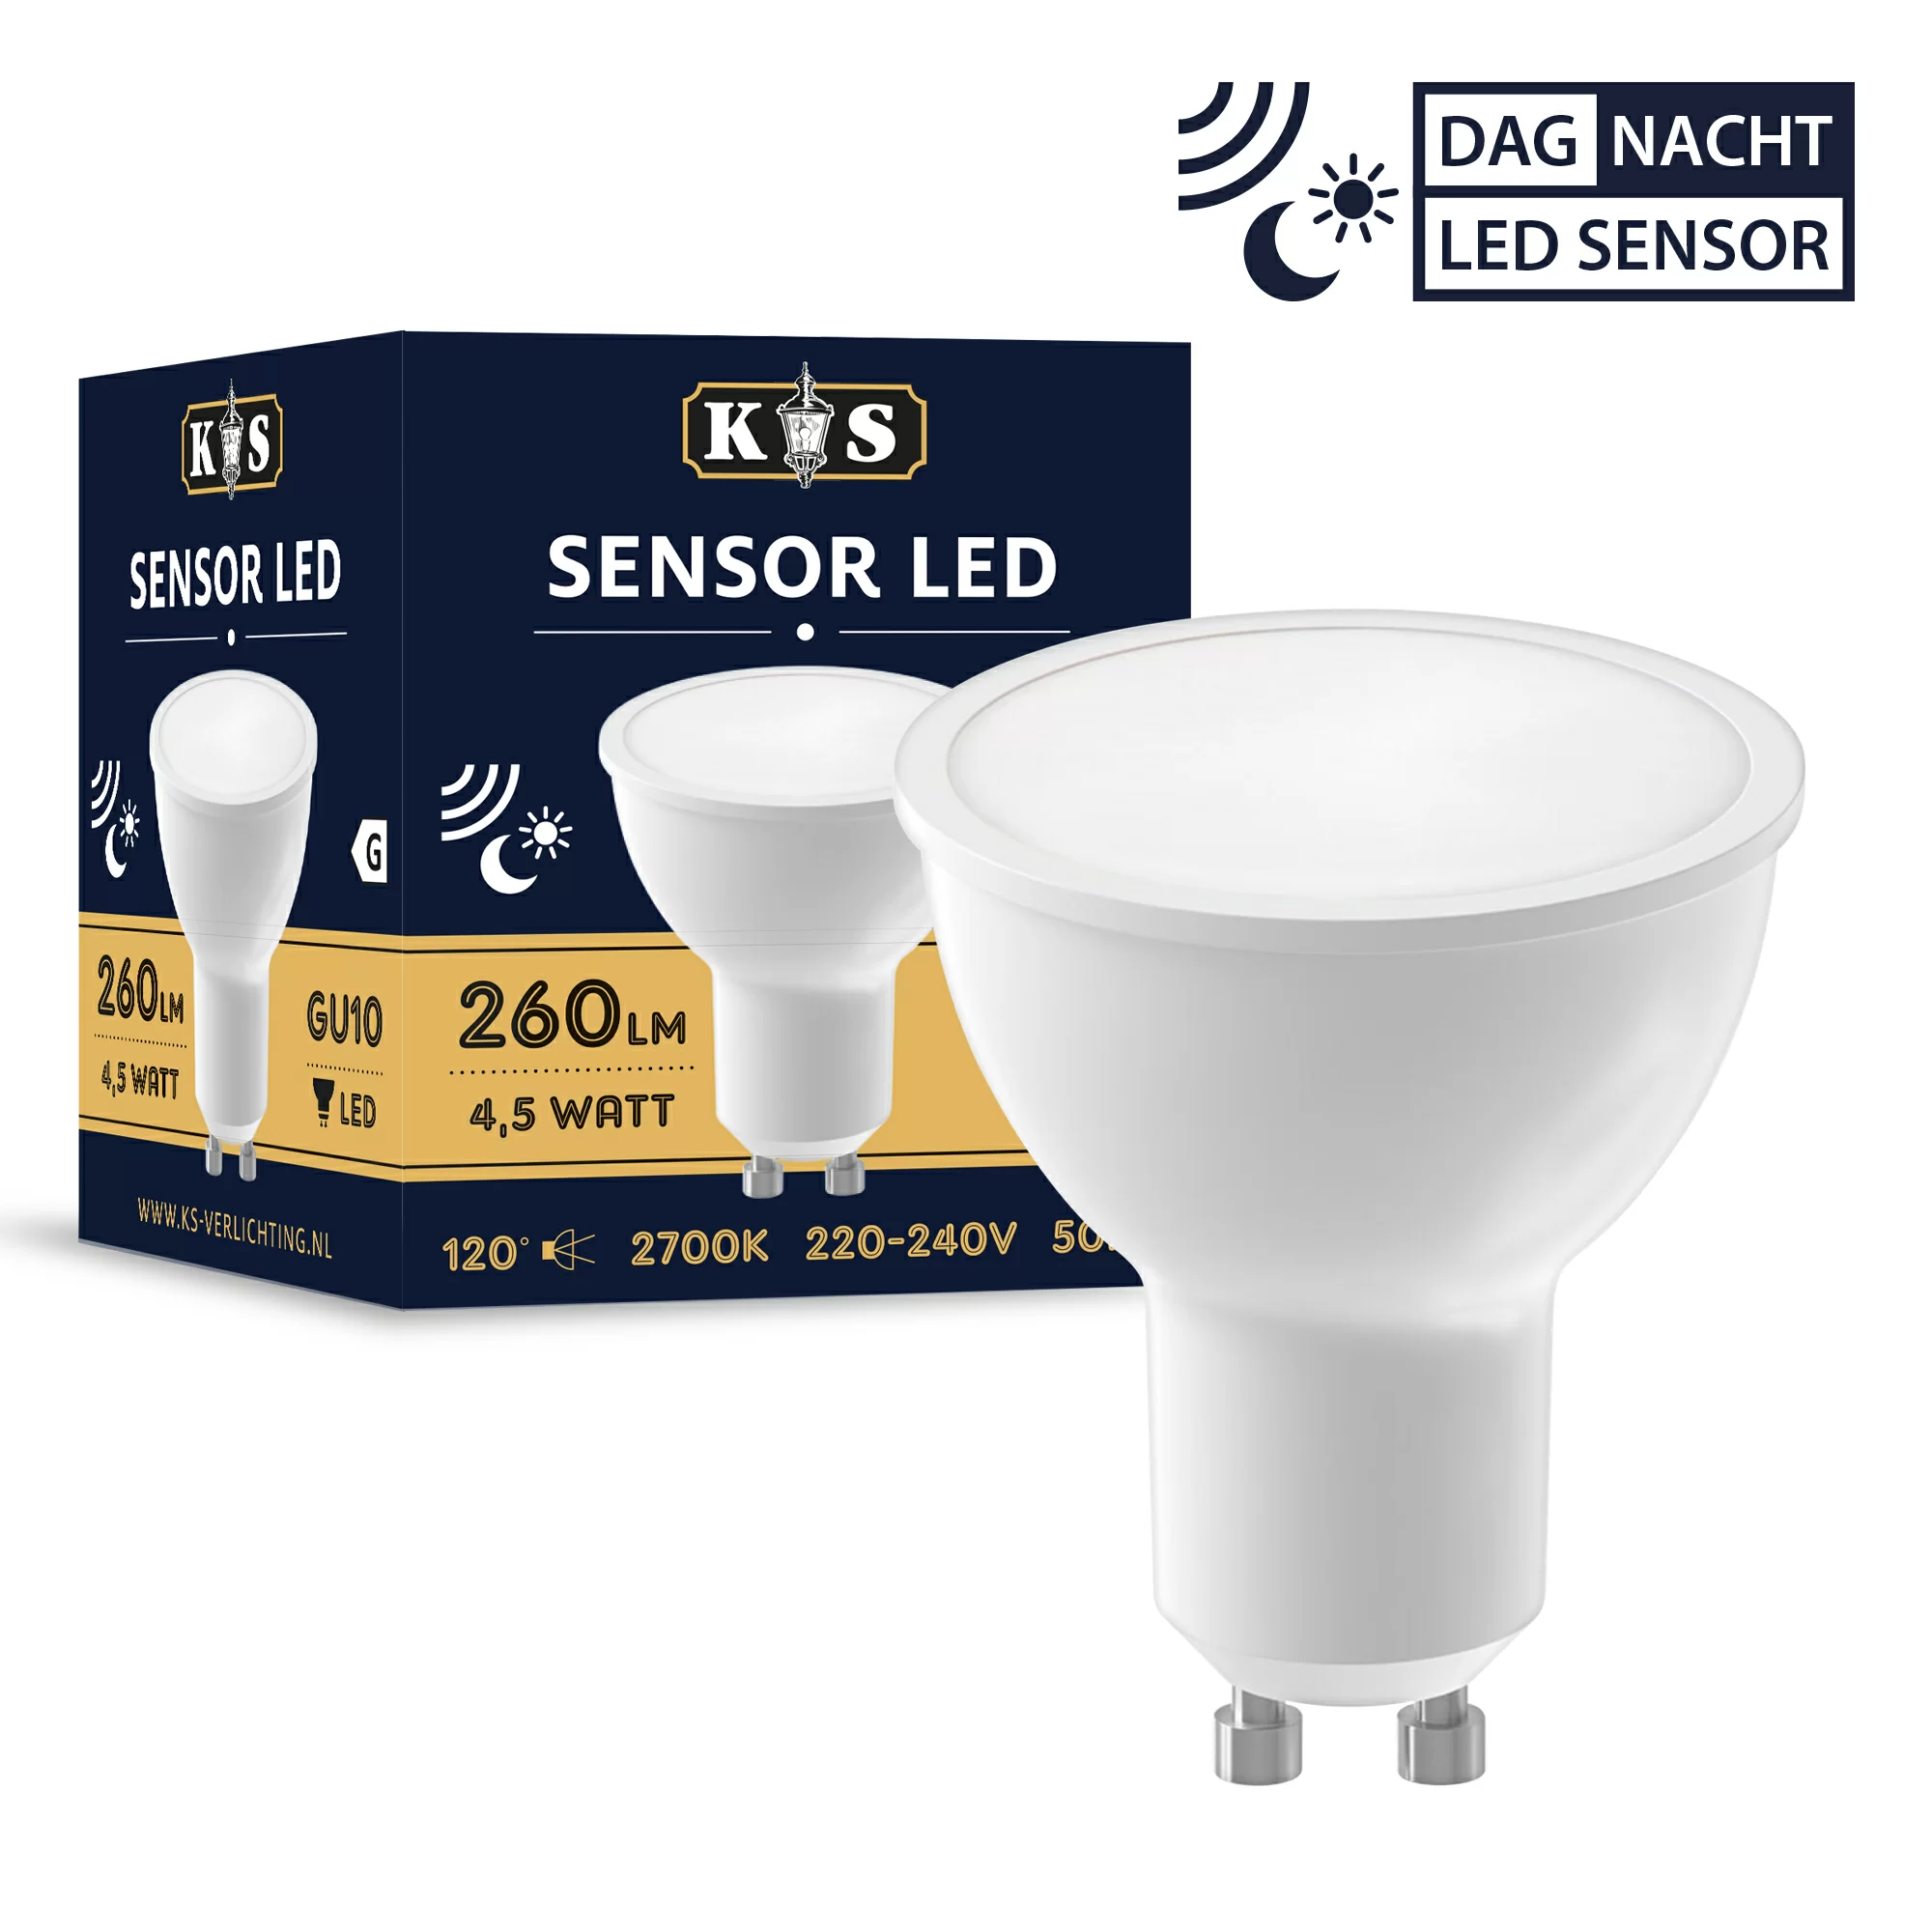 Virus Pech dilemma GU10 LED met sensor D/N 4,5 watt | Nostalux.nl